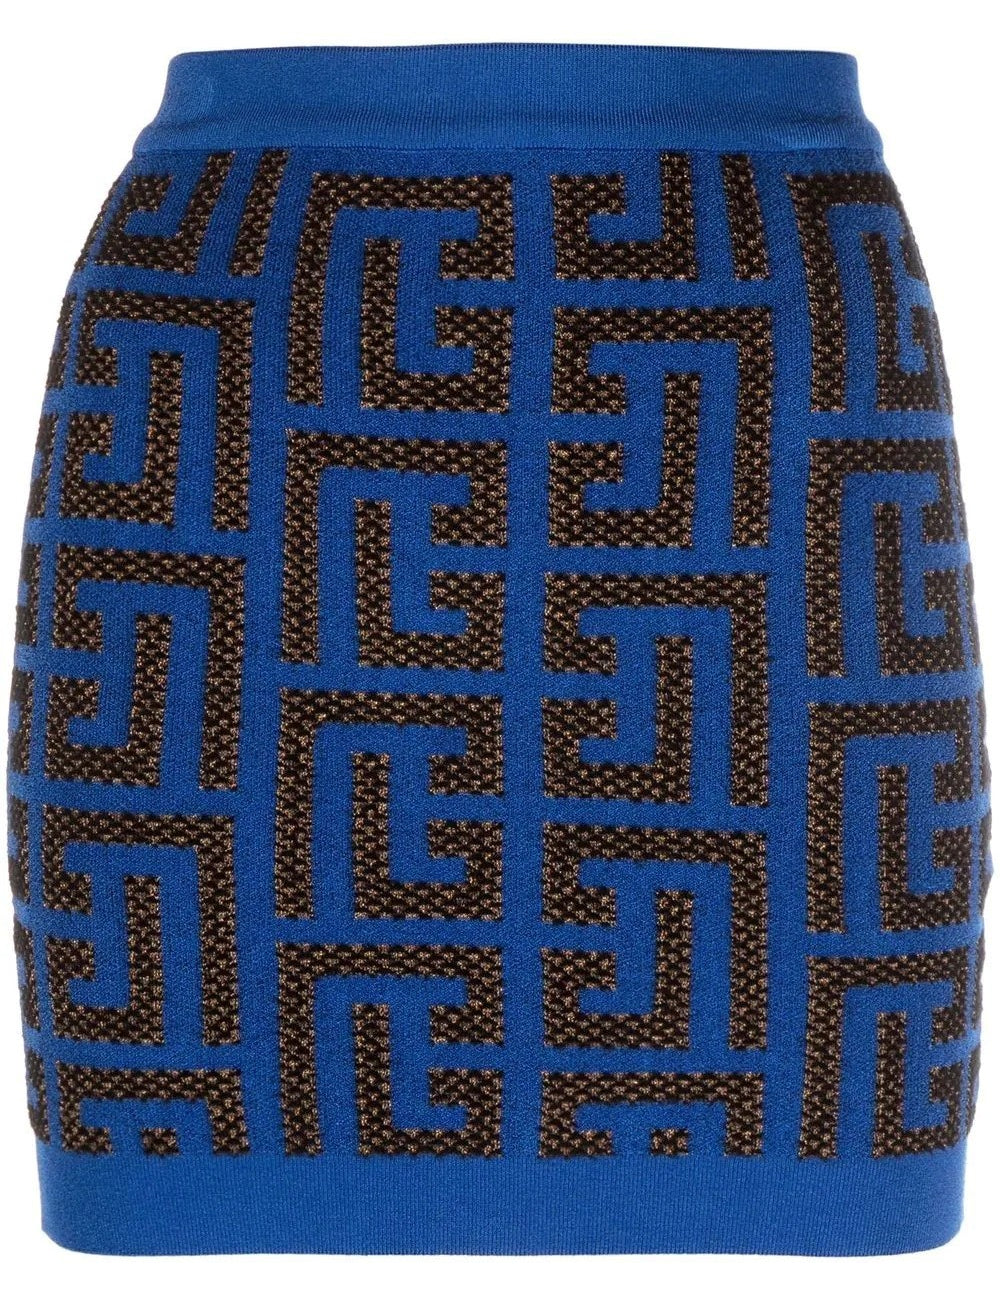 hw-pharaon-monogram-knit-skirt.jpg